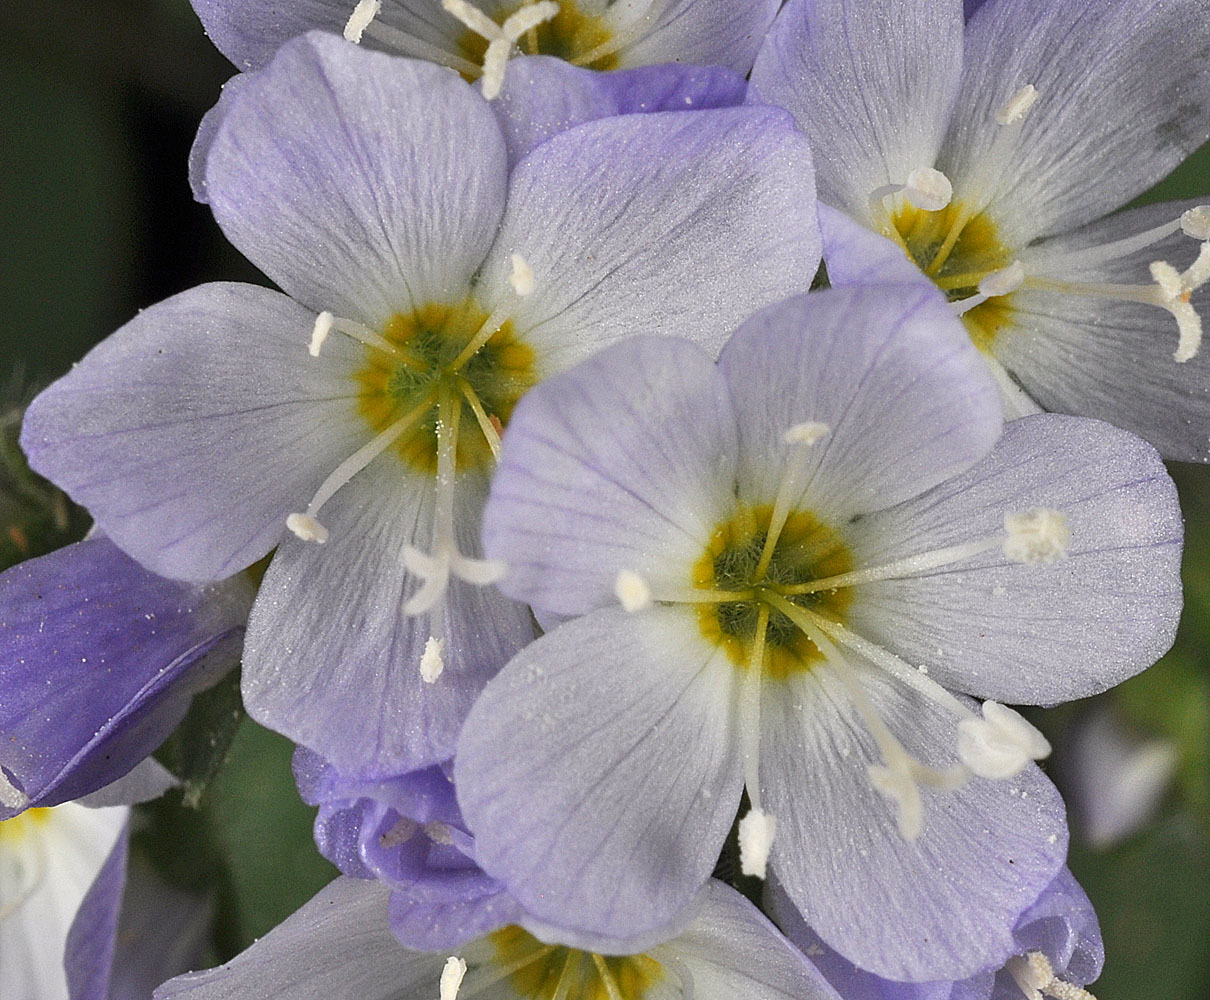 Flora of Eastern Washington Image: Polemonium pulcherrimum